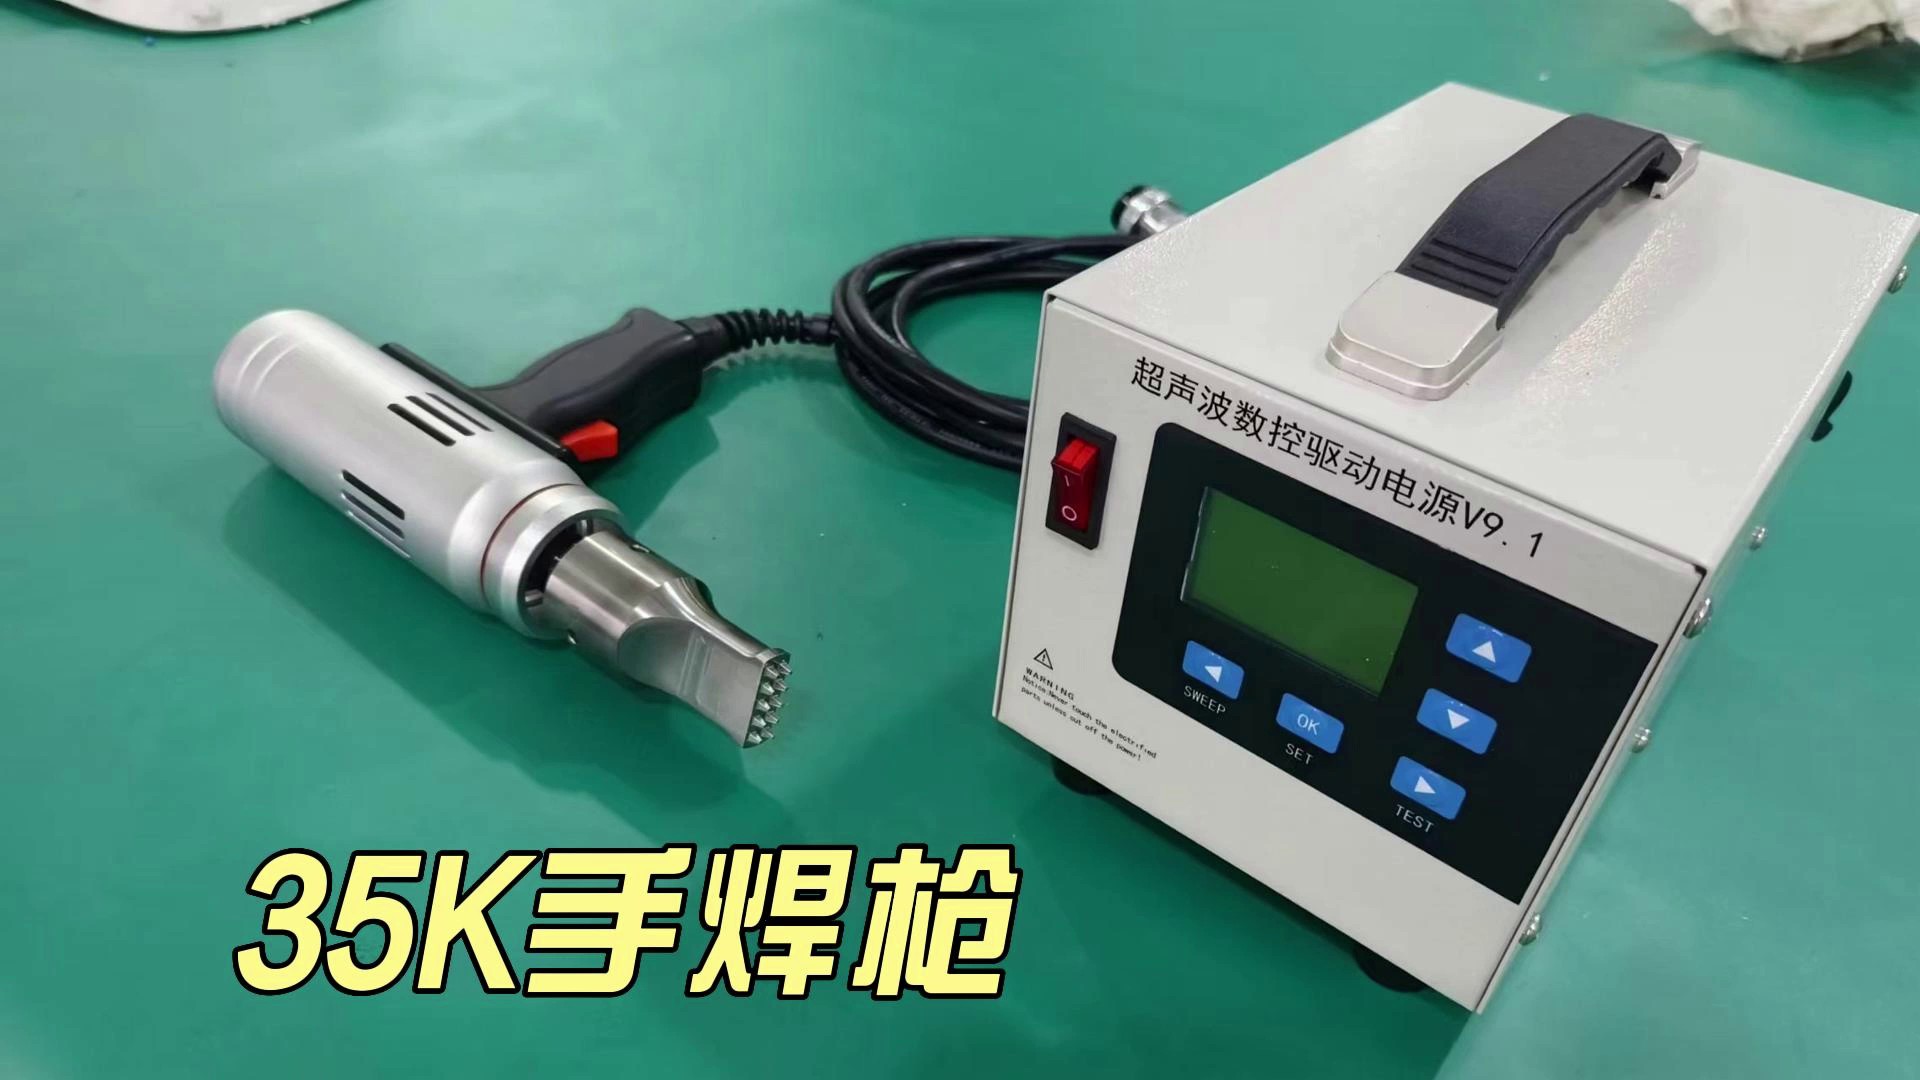 江苏国产超声波焊接设备,超声波焊接设备